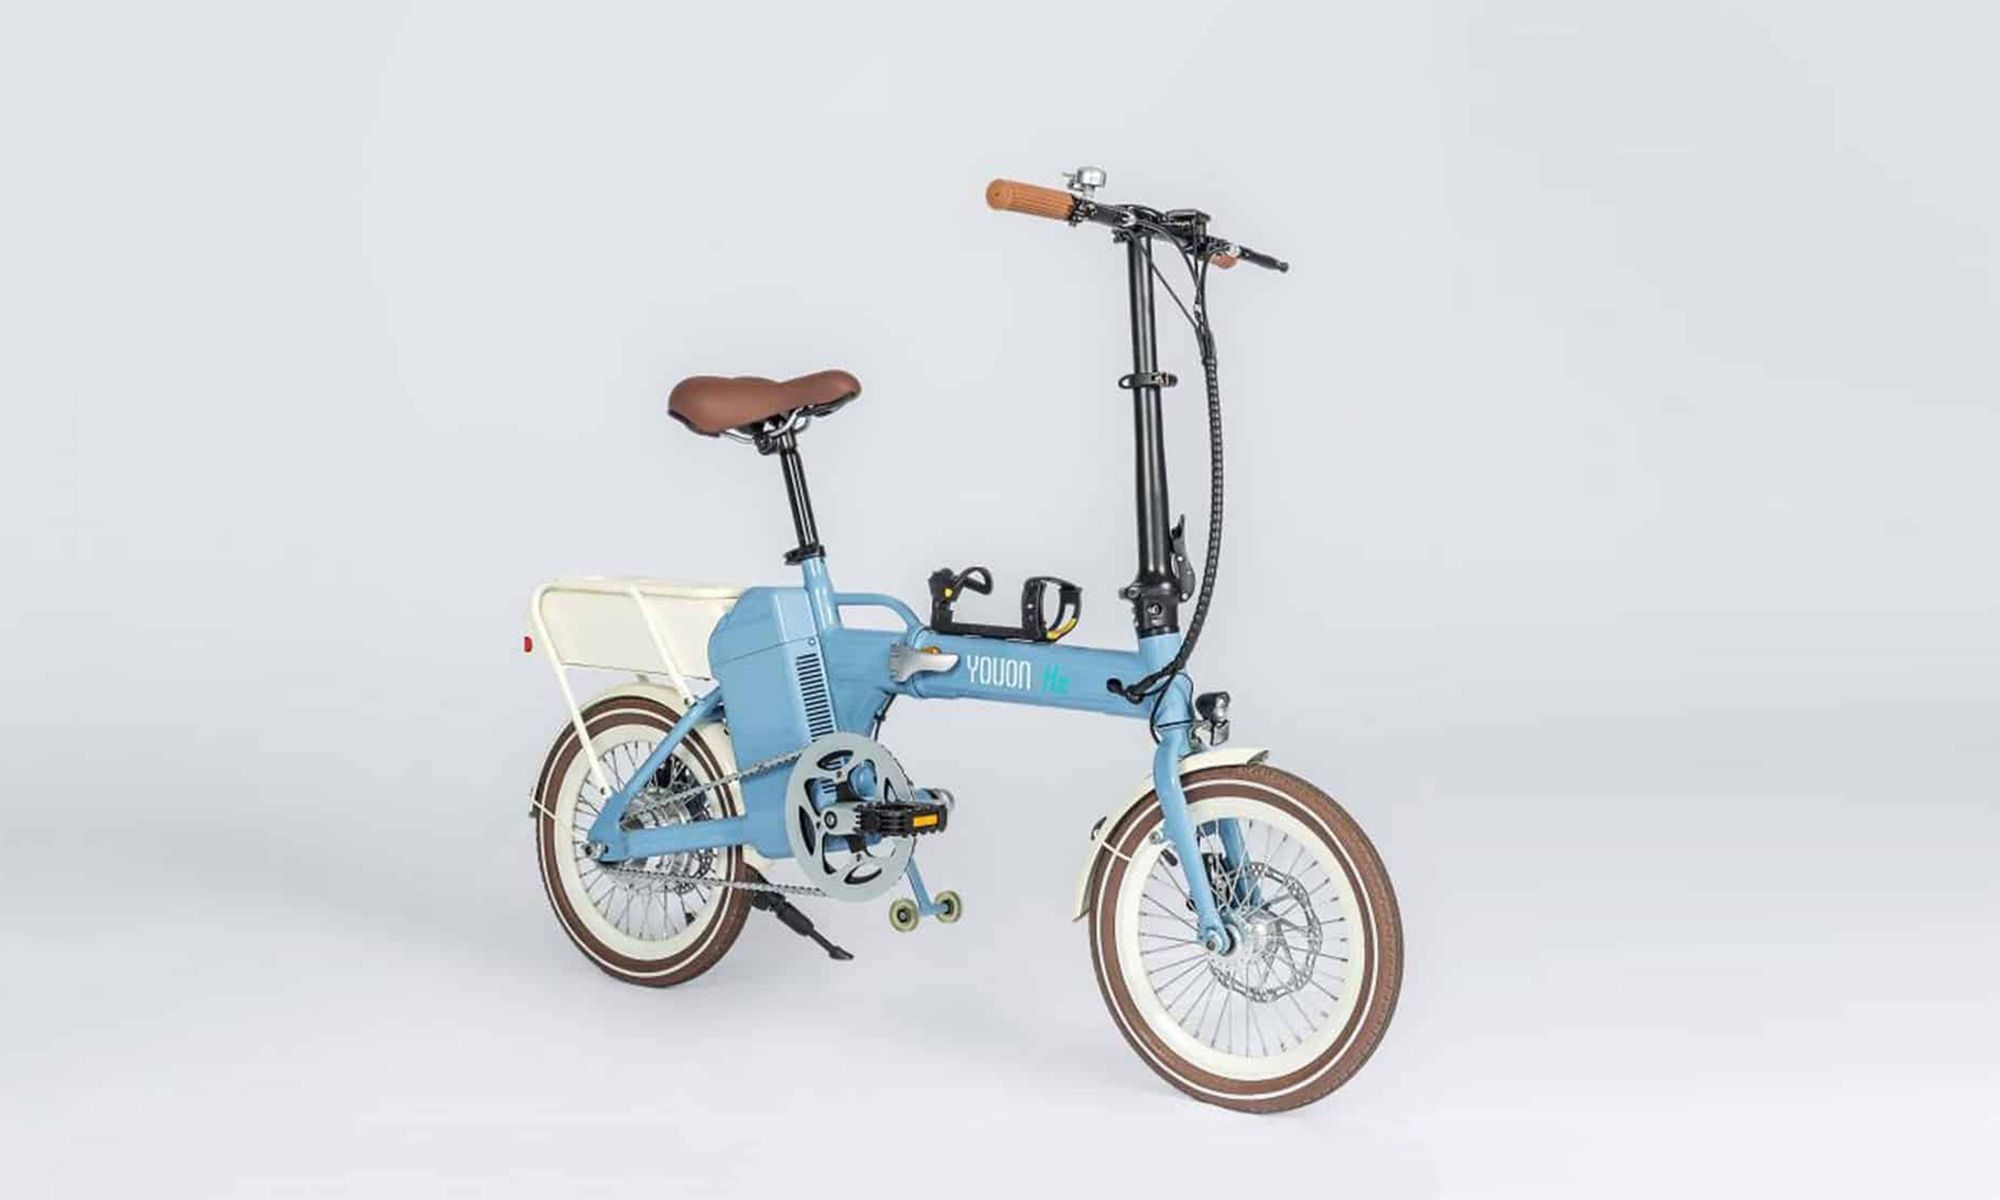 La bicicleta eléctrica por hidrógeno de Yuoun presenta una estética retro.